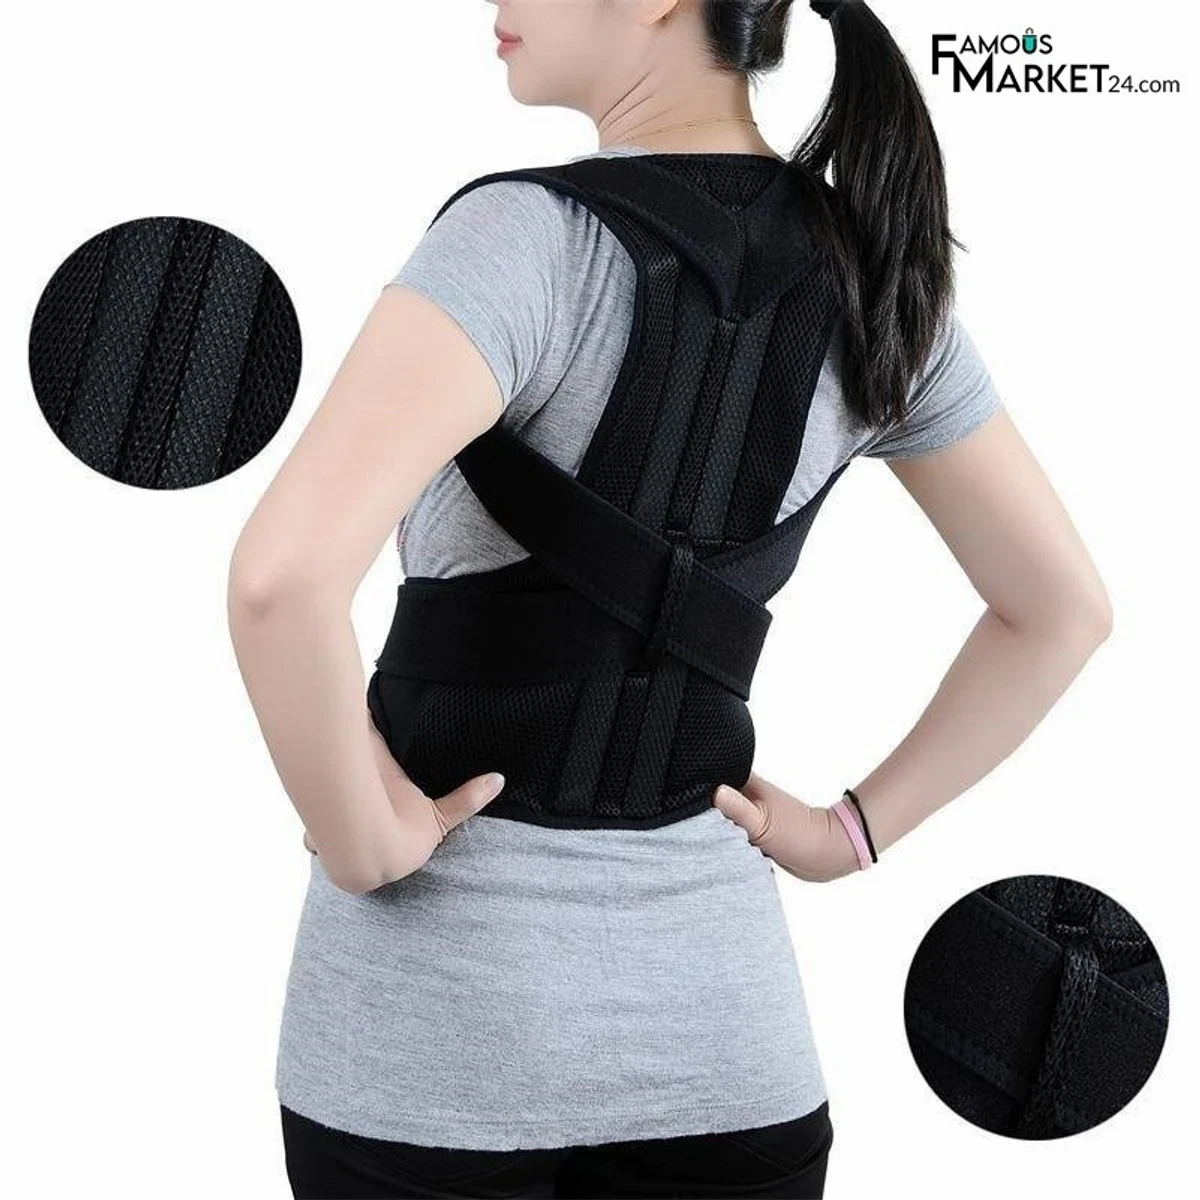 Posture Back Support Belt